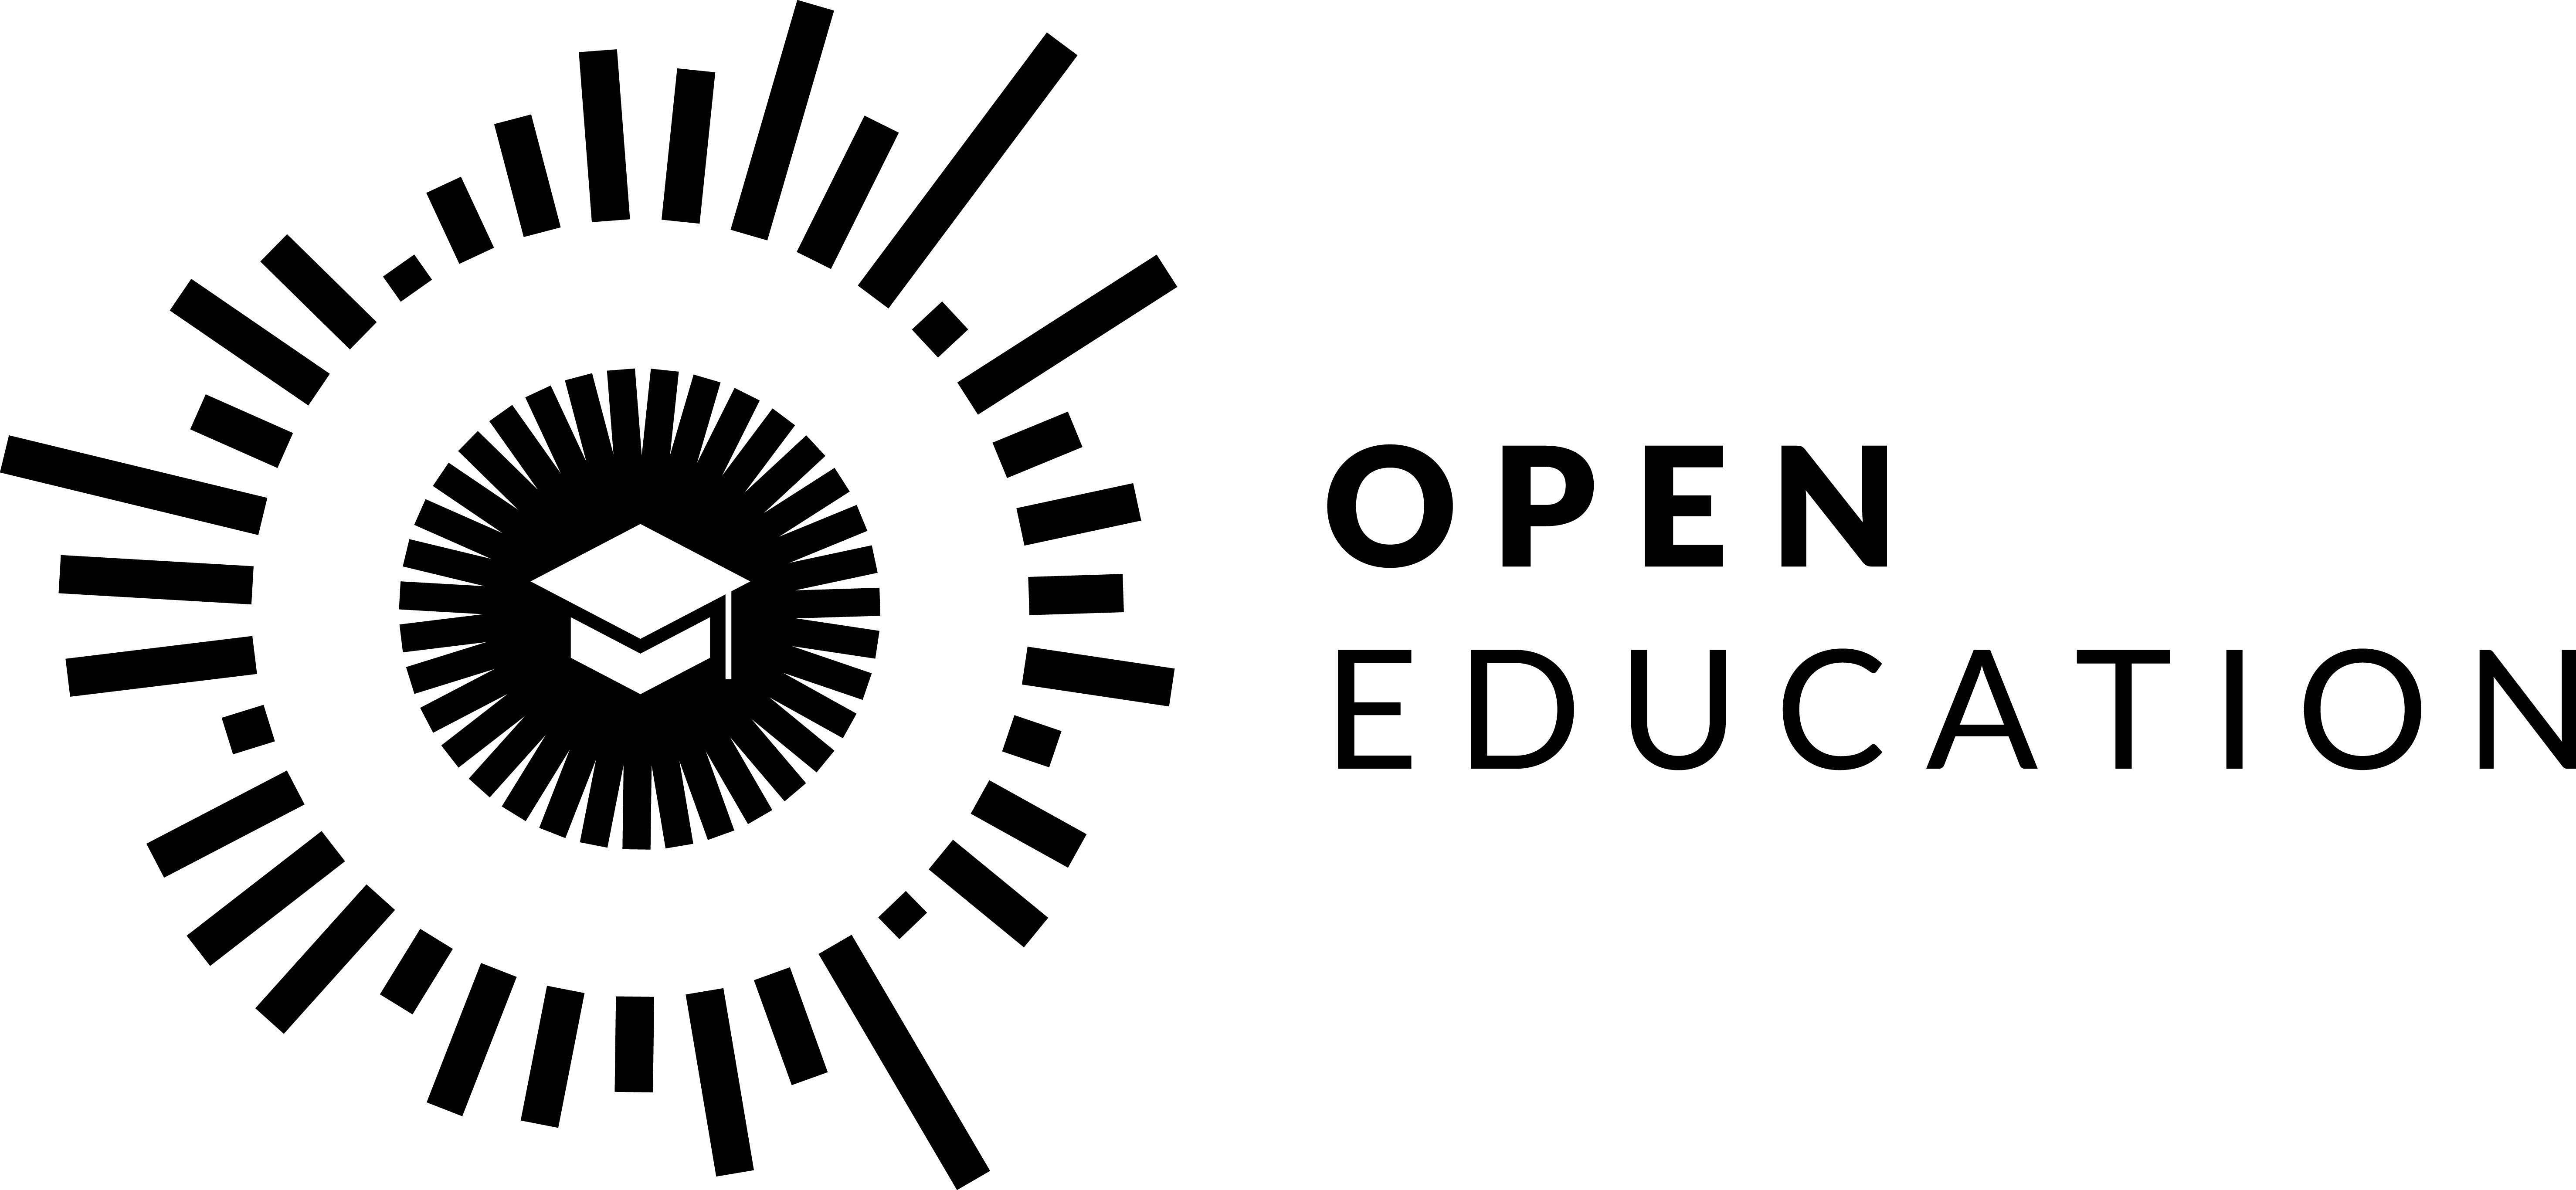 Образование лого. День открытых данных (International open data Day). Index logo.